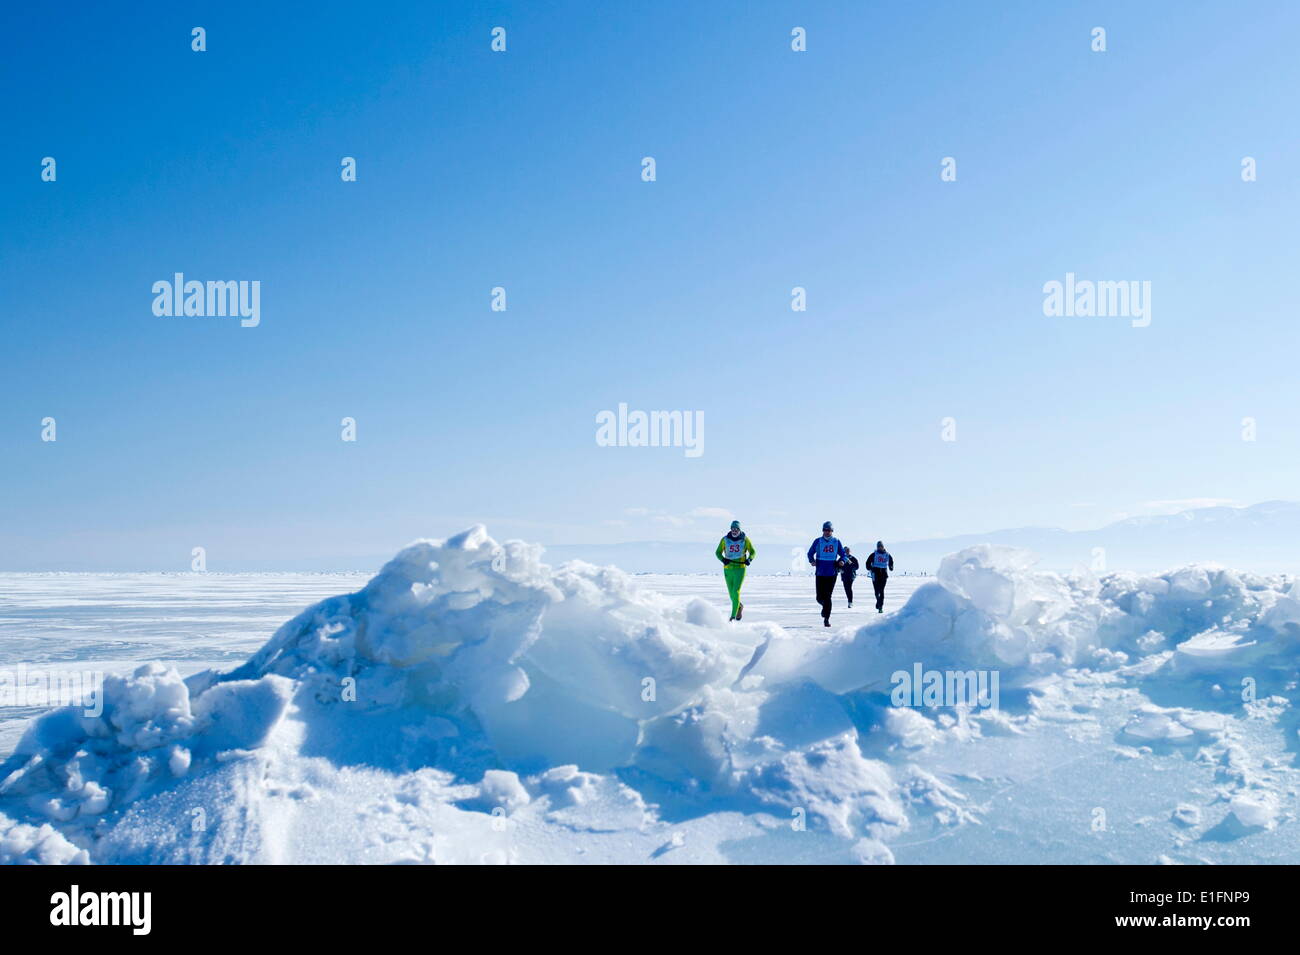 Runners in the 10th Baikal Ice Marathon, run on the frozen surface of the world's largest lake, Siberia, Irkutsk Oblast, Russia Stock Photo